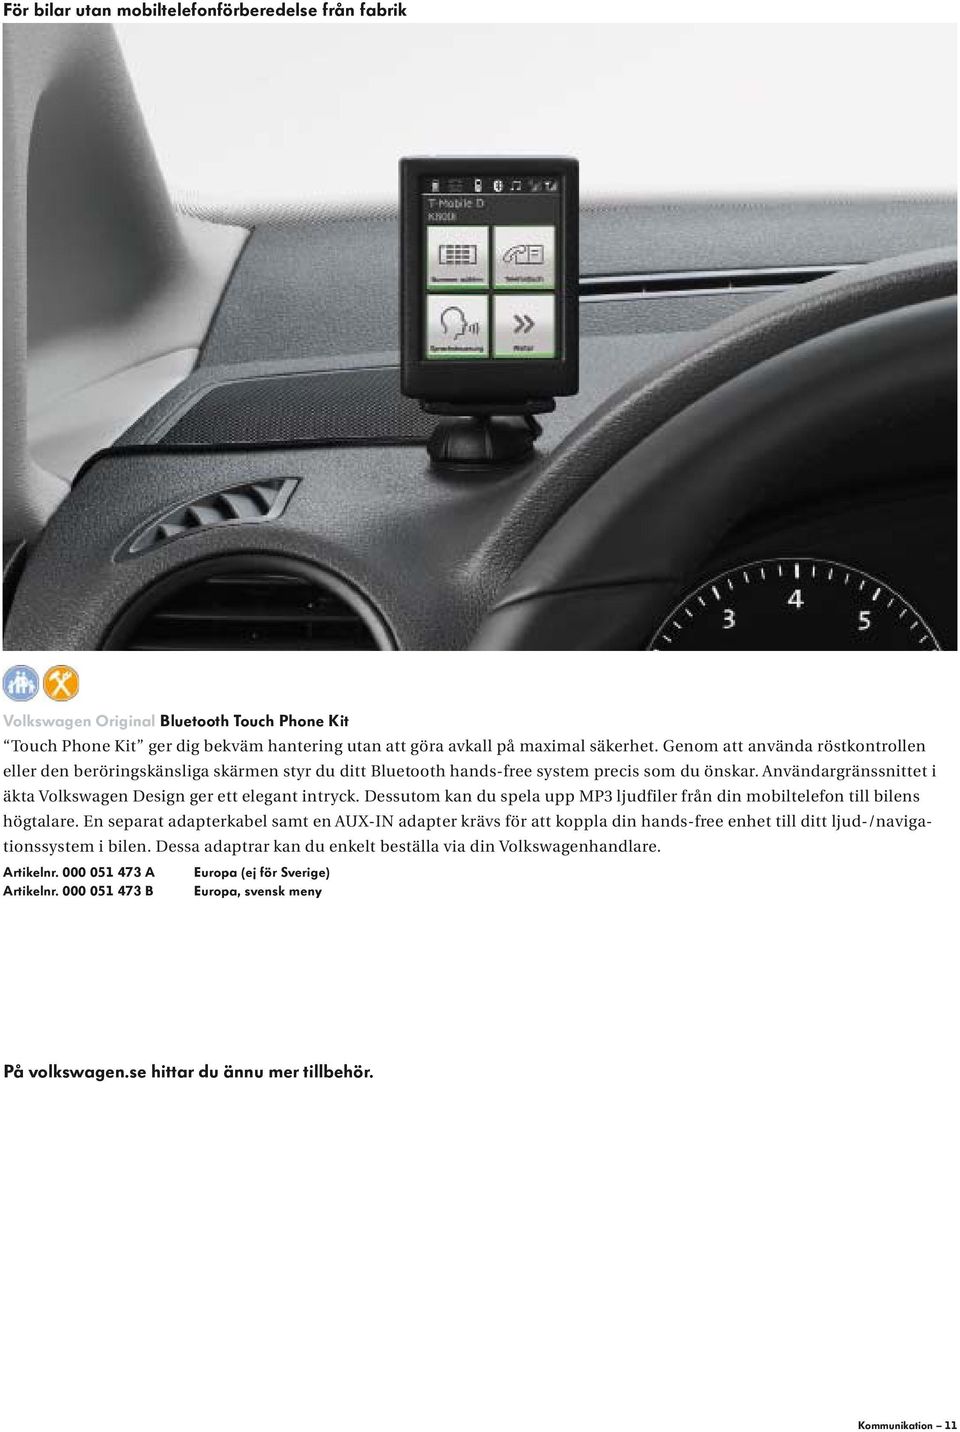 Användargränssnittet i äkta Volkswagen Design ger ett elegant intryck. Dessutom kan du spela upp MP3 ljudfiler från din mobiltelefon till bilens högtalare.